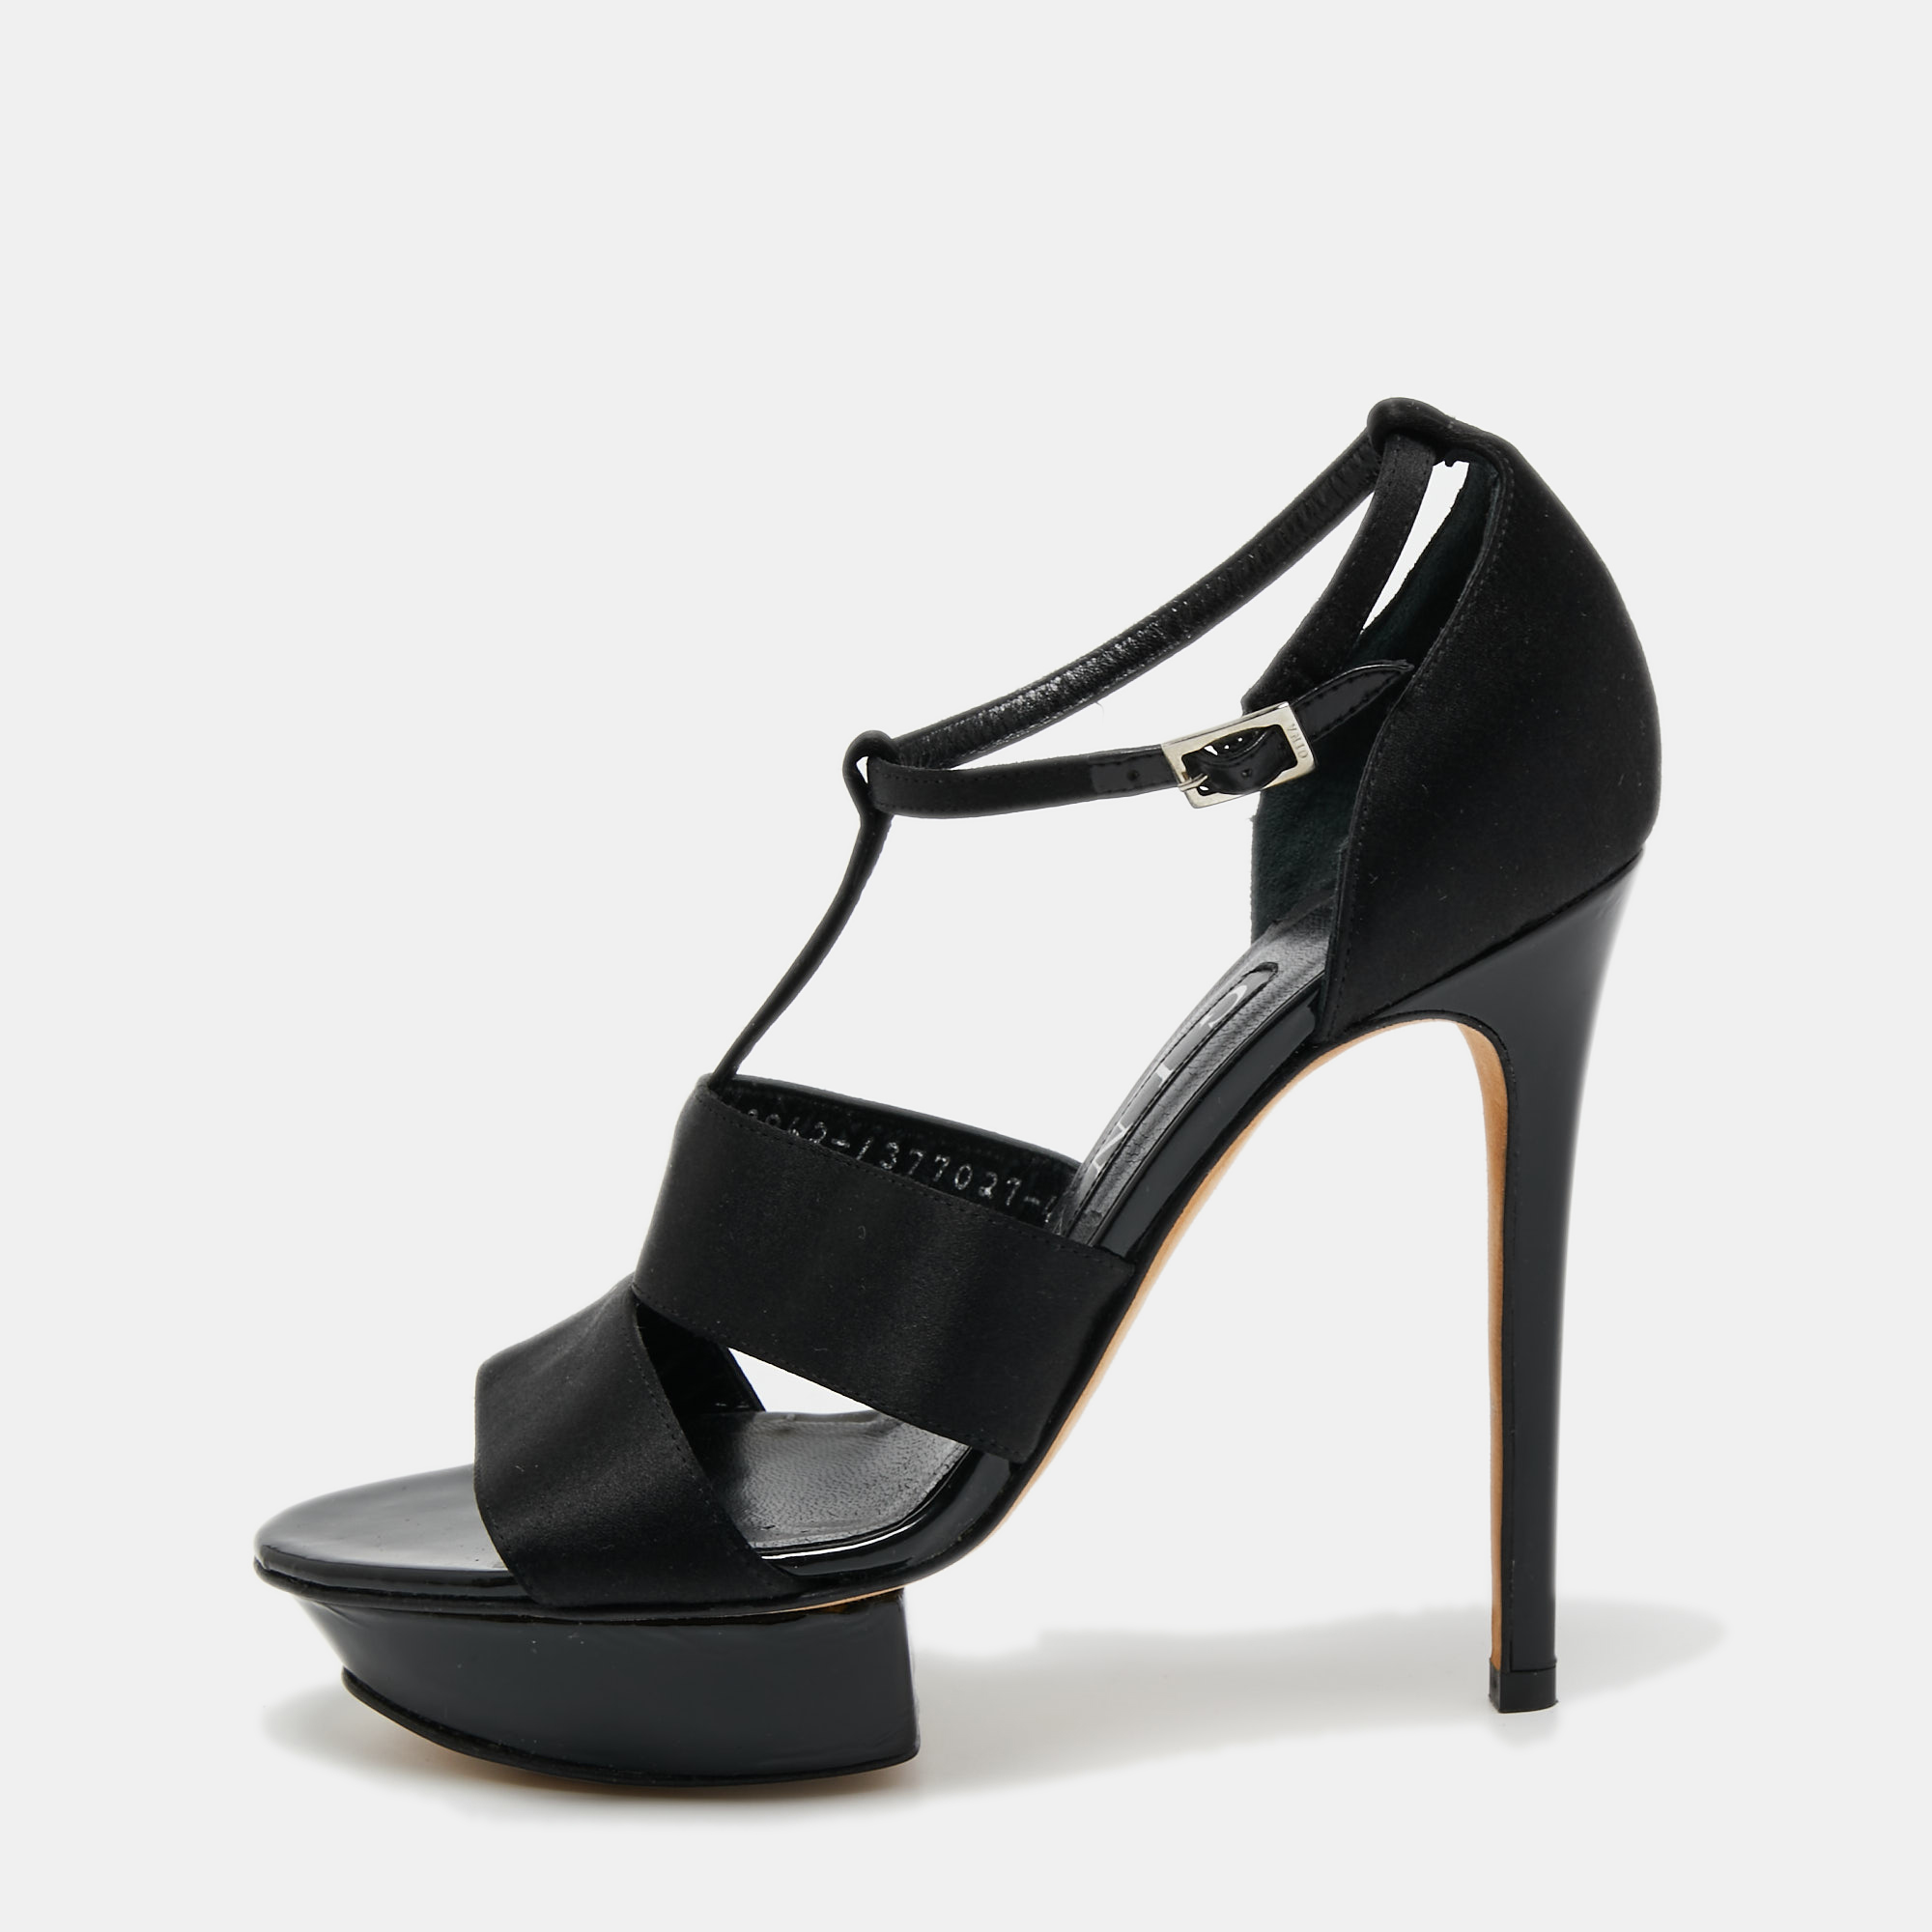 Pre-owned Gina Black Satin Ankle Strap Platform Sandals Size 37.5